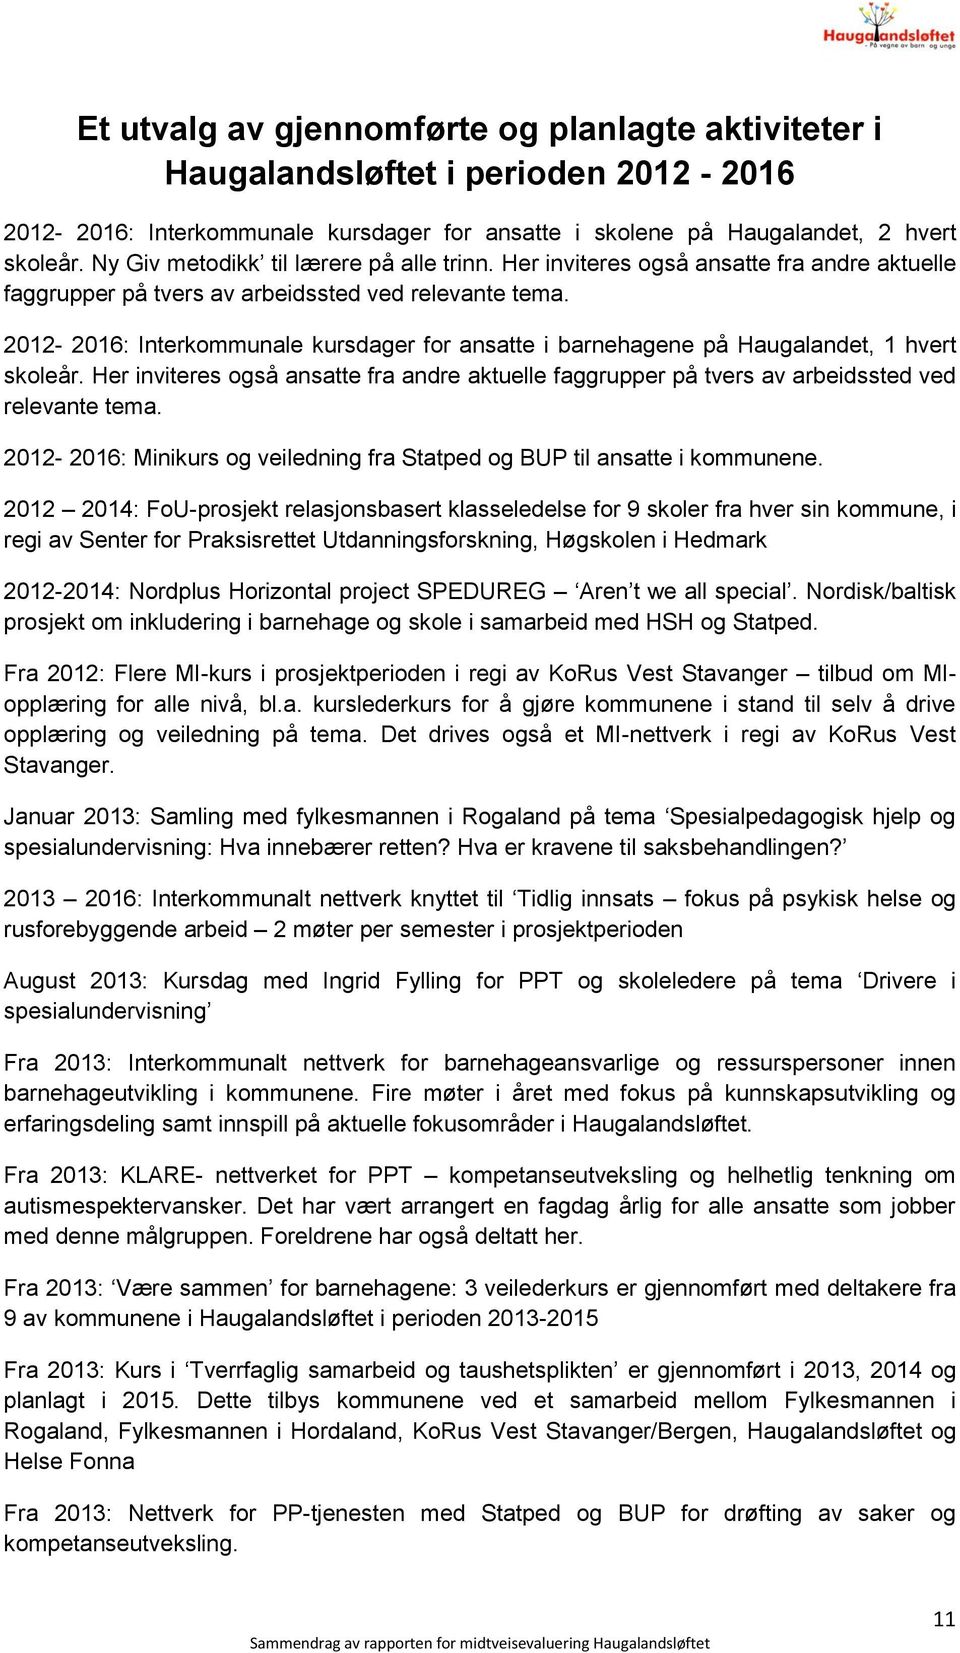 2012-2016: Interkommunale kursdager for ansatte i barnehagene på Haugalandet, 1 hvert skoleår. Her inviteres også ansatte fra andre aktuelle faggrupper på tvers av arbeidssted ved relevante tema.